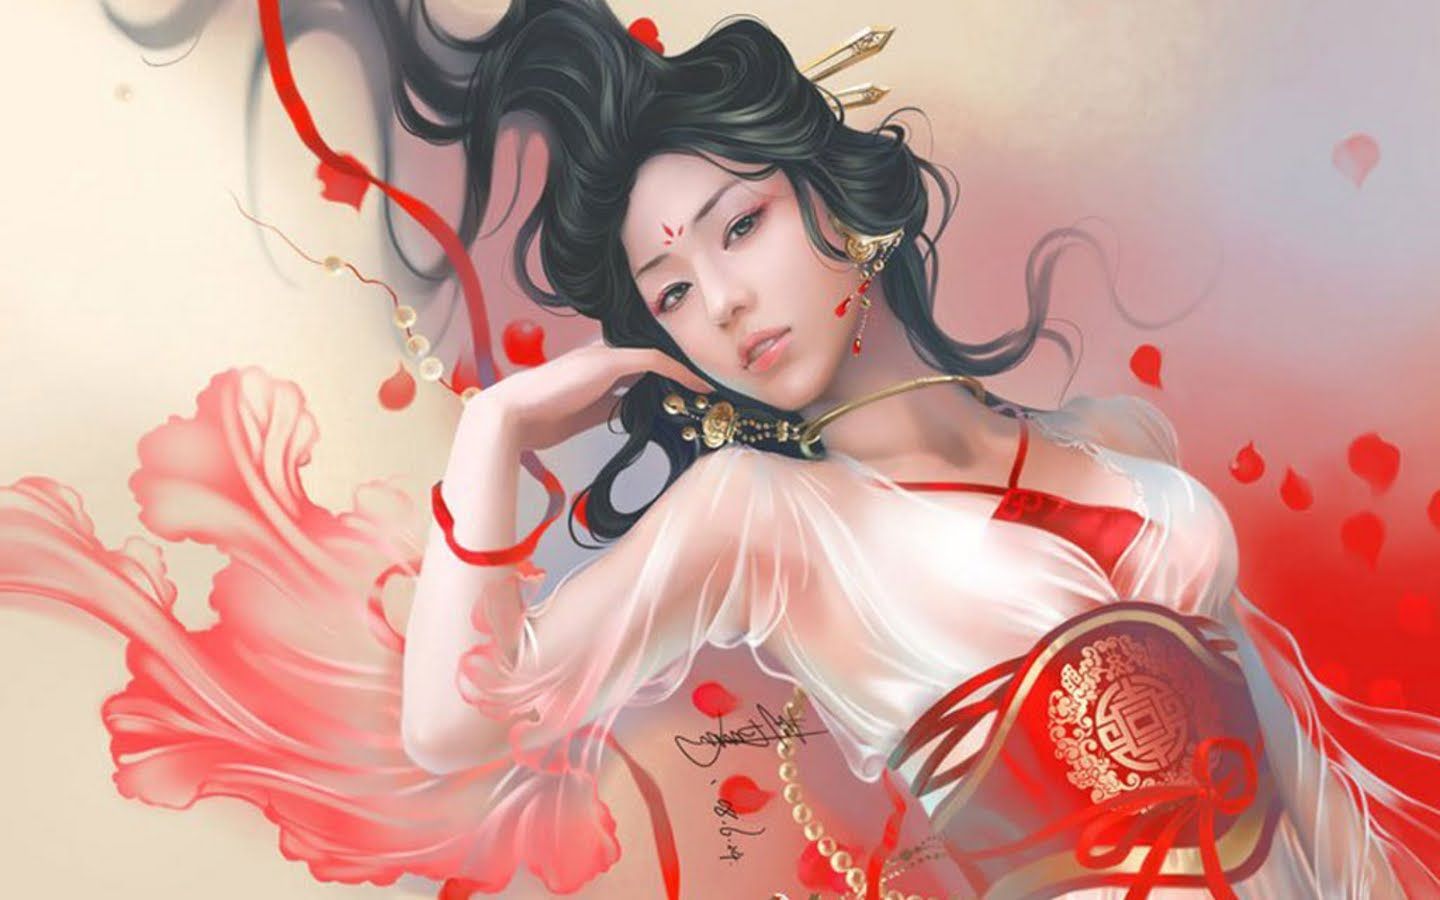 ASIAN ART & MORE. Fantasy women, Art girl, Fantasy girl